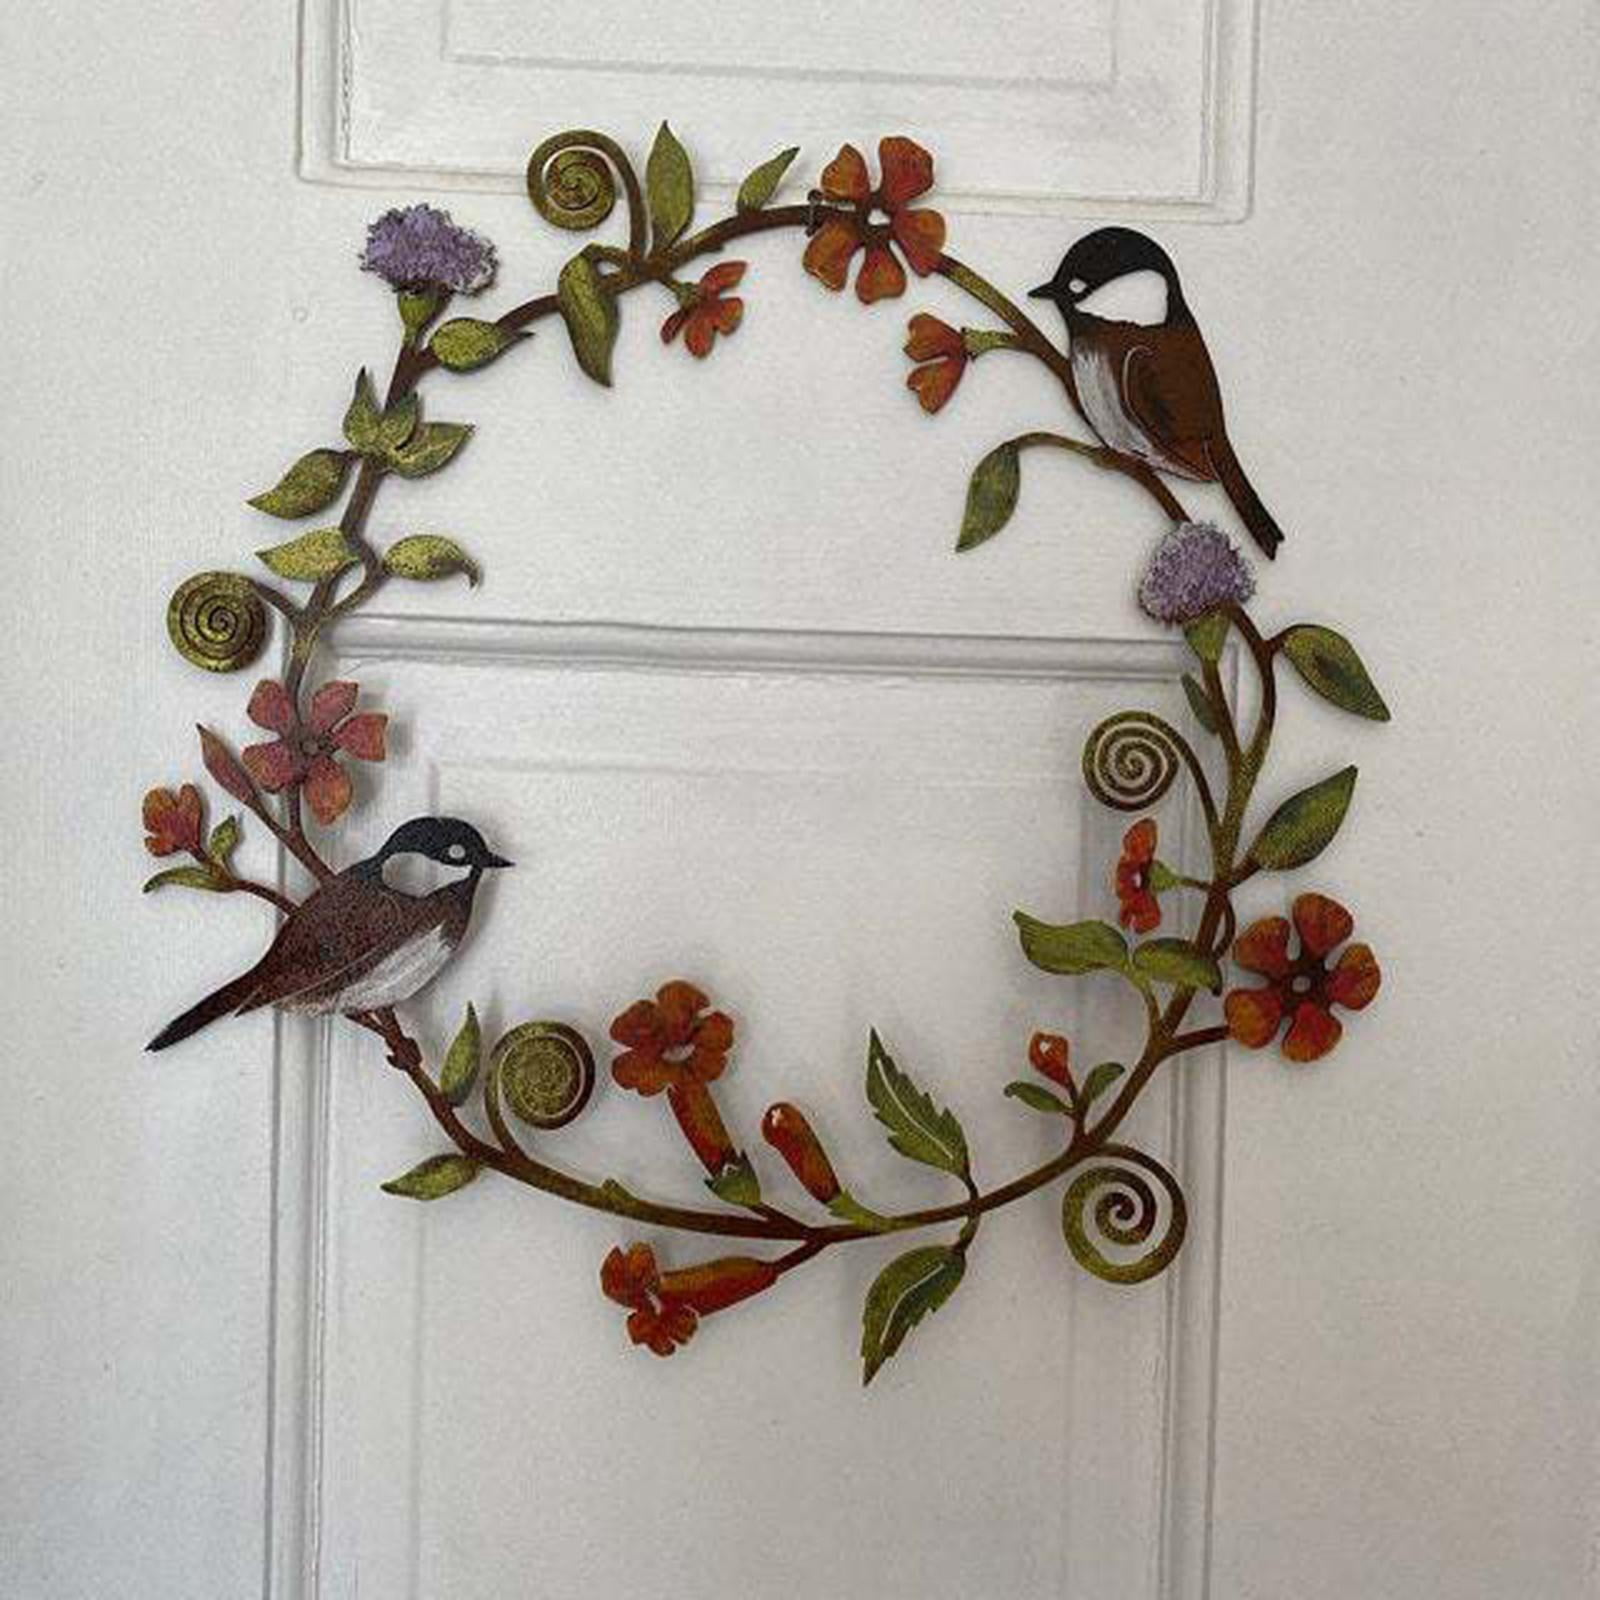 Chickadees Flowers Metal Art Wreath Decor for Door Window Wall Hanging Home 